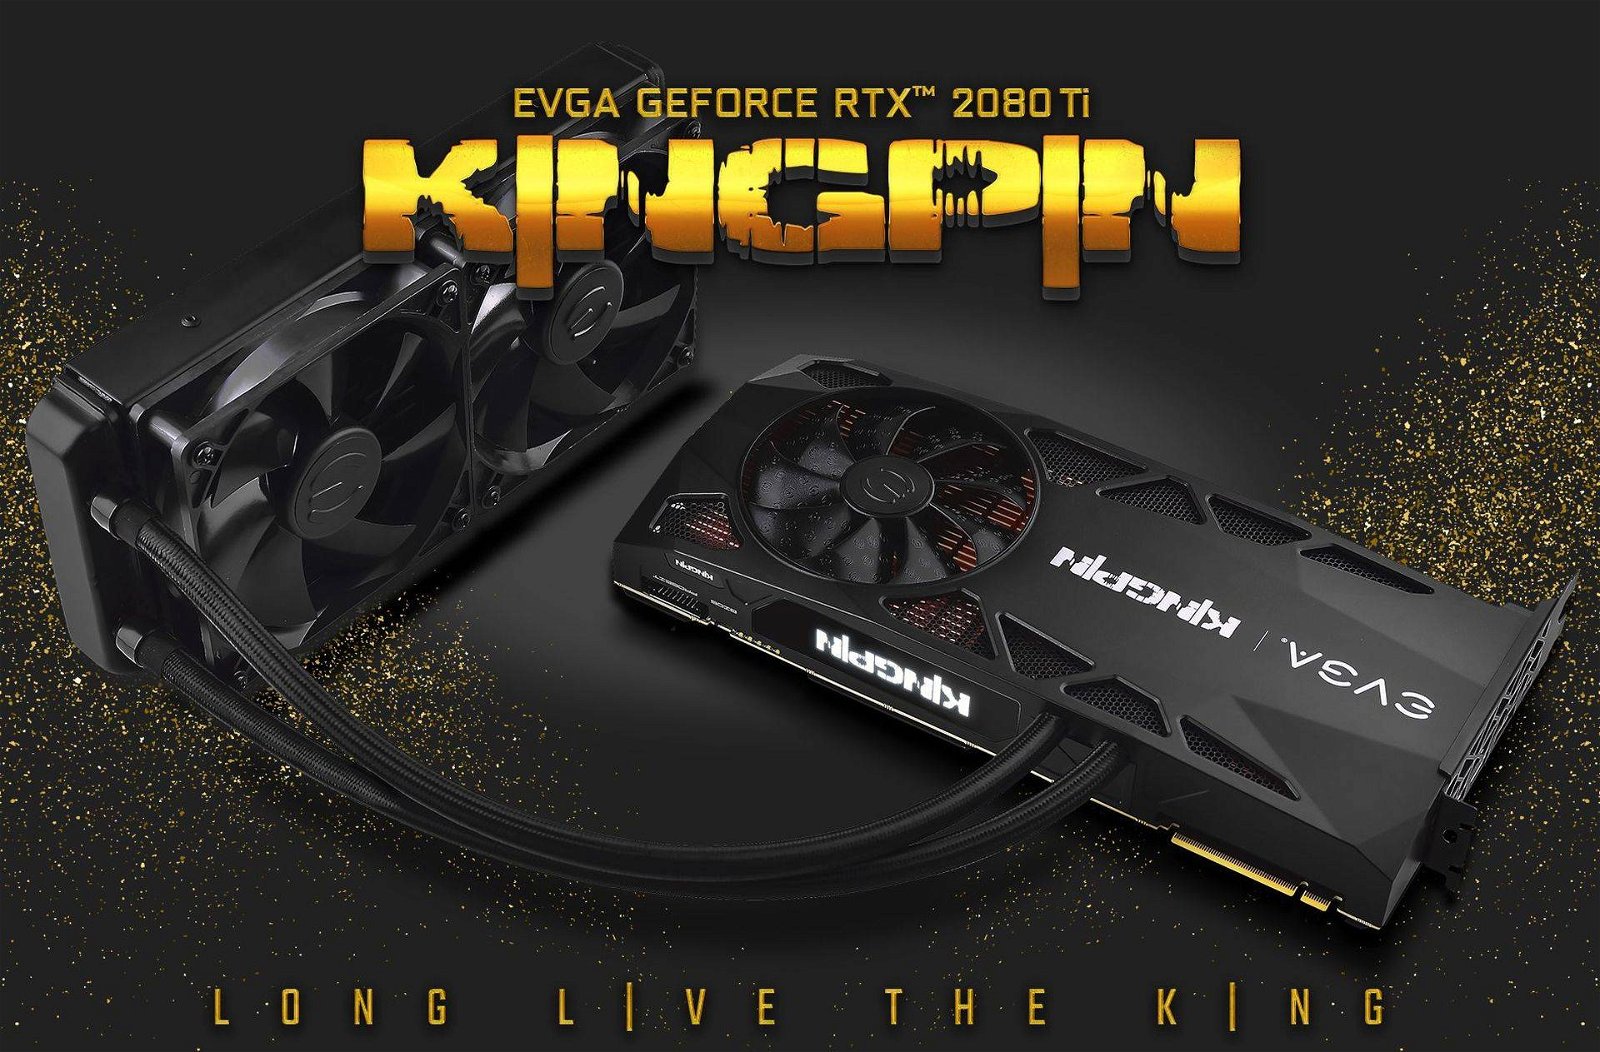 Immagine di EVGA GeForce RTX 2080 Ti KINGPIN disponibile, scheda e prezzo mostruosi